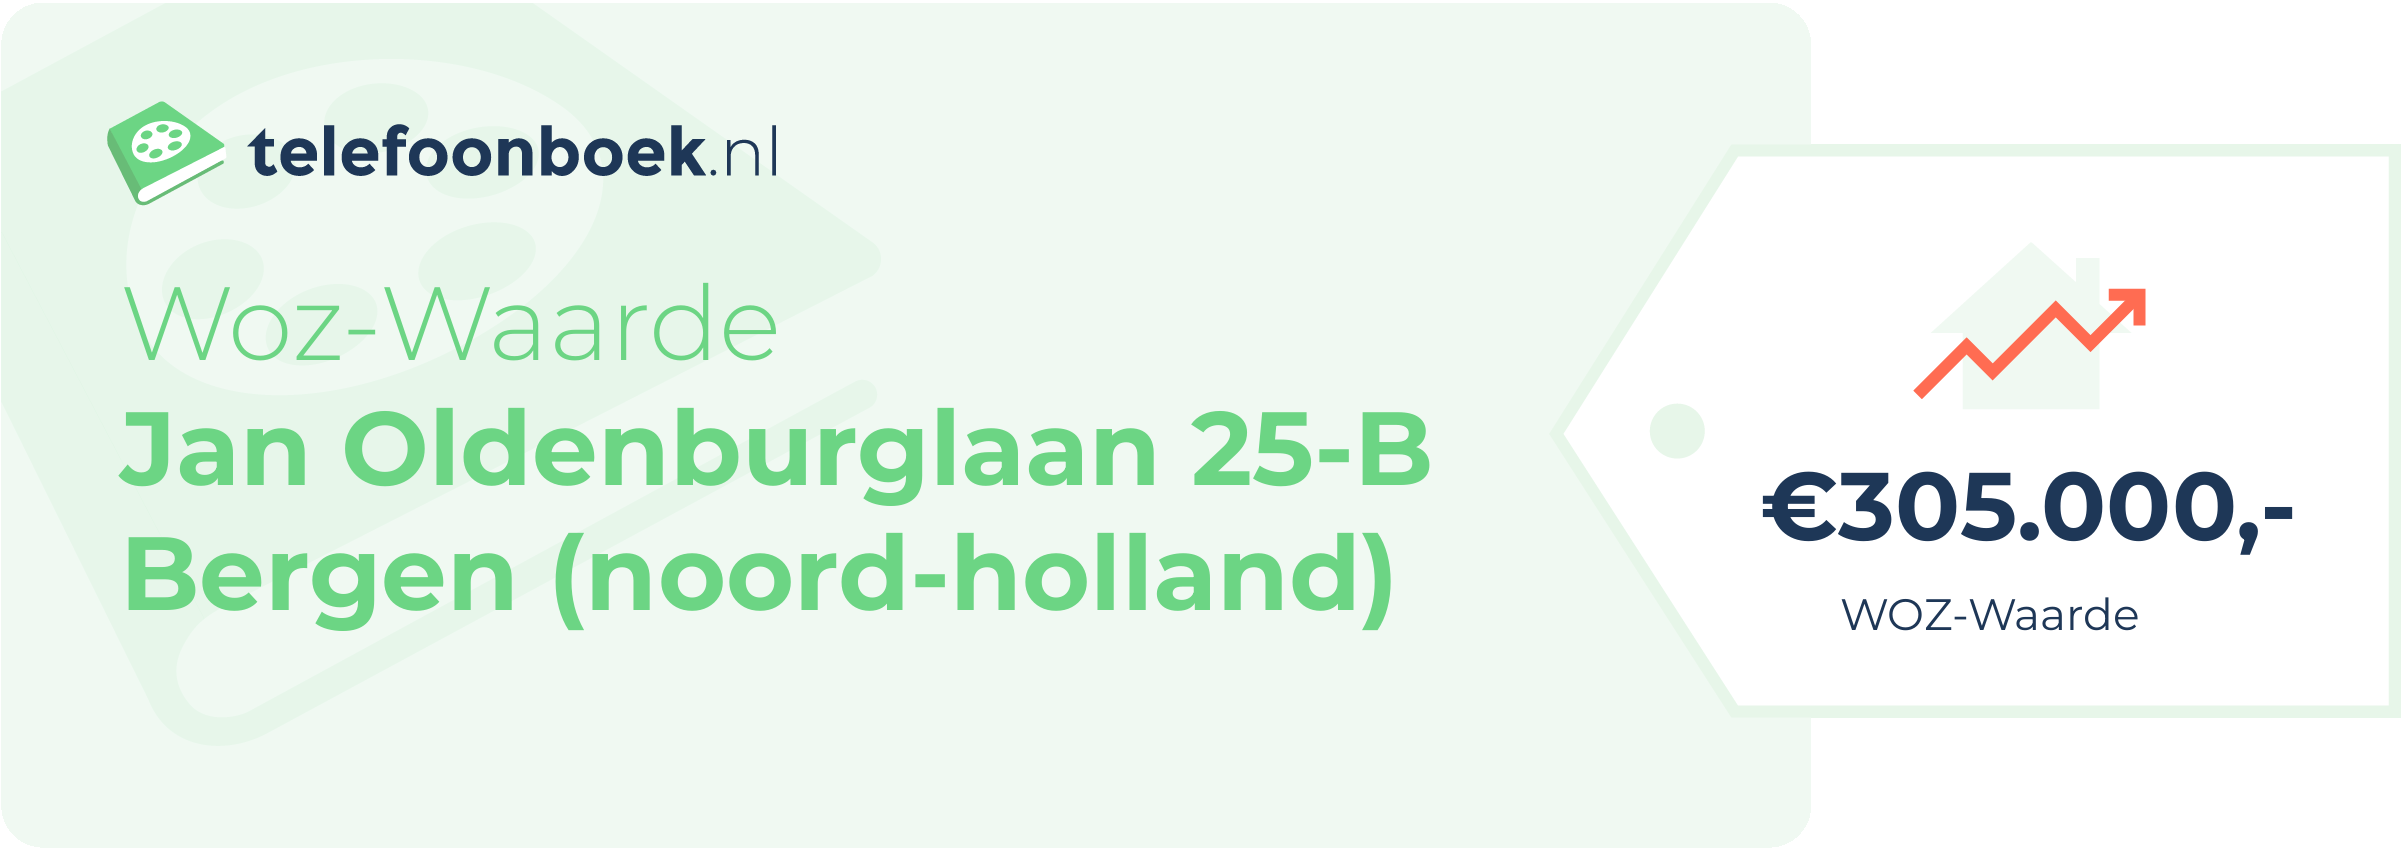 WOZ-waarde Jan Oldenburglaan 25-B Bergen (Noord-Holland)